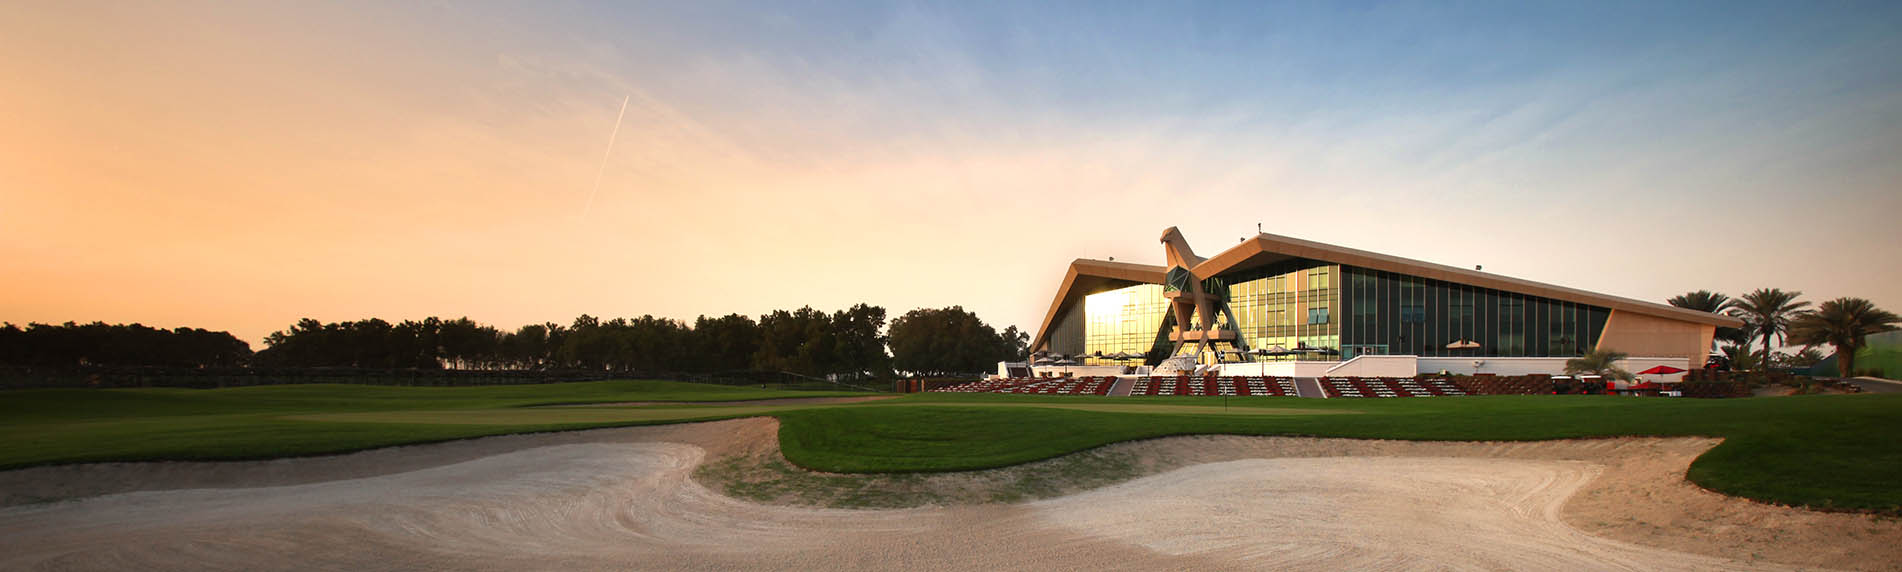 emirates golf